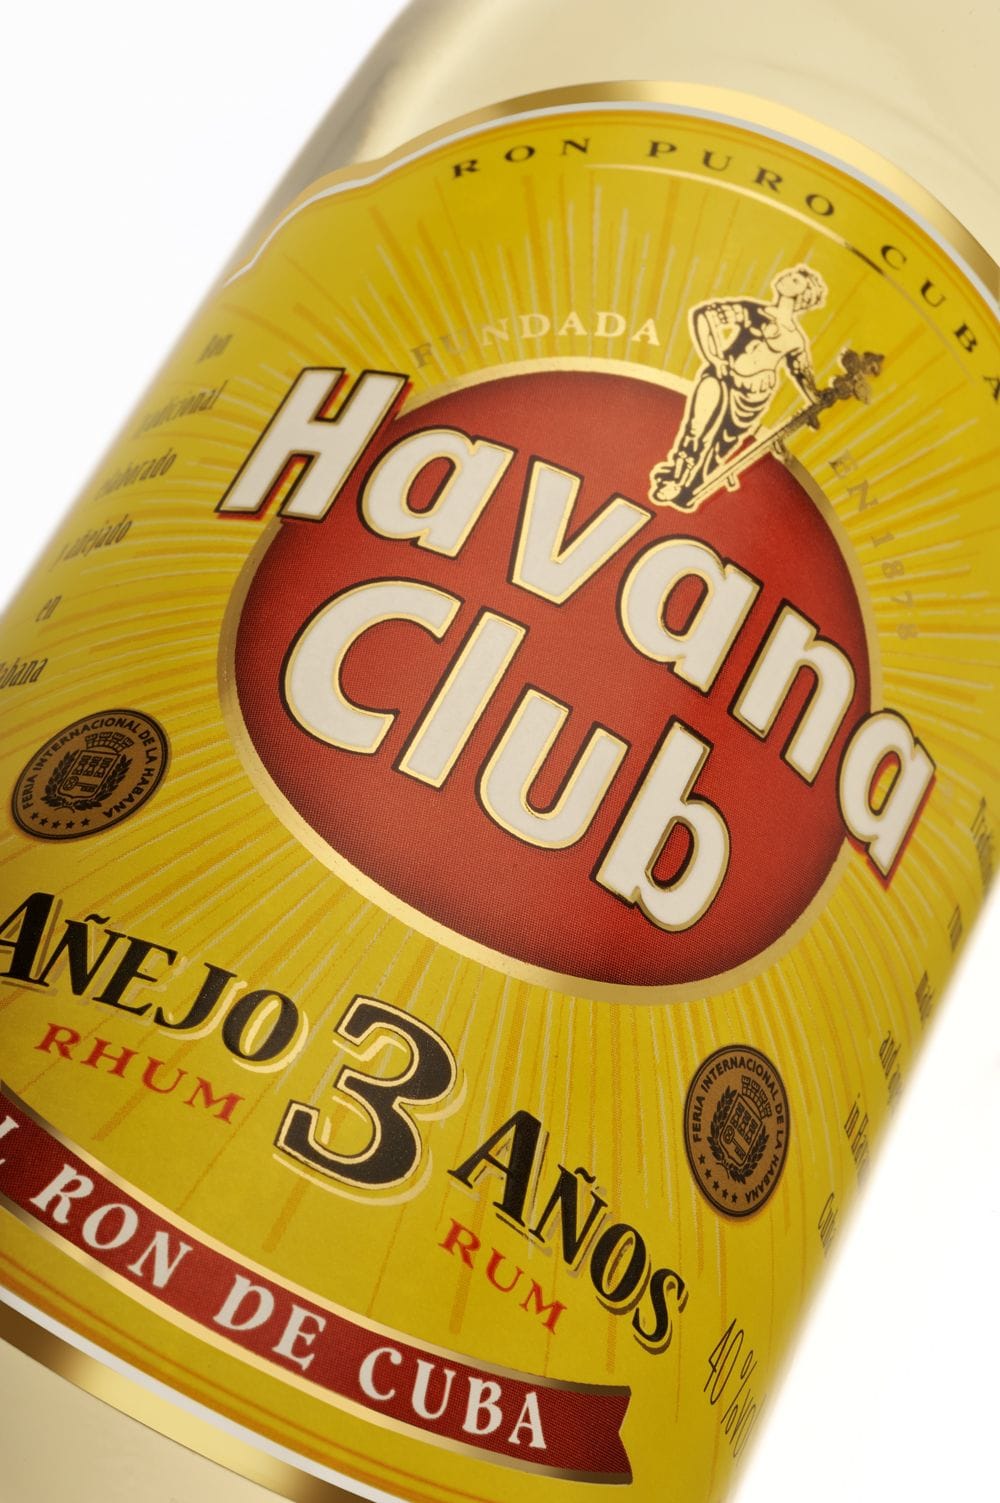 Für einen guten Cuba Libre ist ein leichter weißer Rum ideal. Bestenfalls sollte es auch eine kubanische Spirituose sein. Das wäre beispielsweise Havana Club 3 Años.